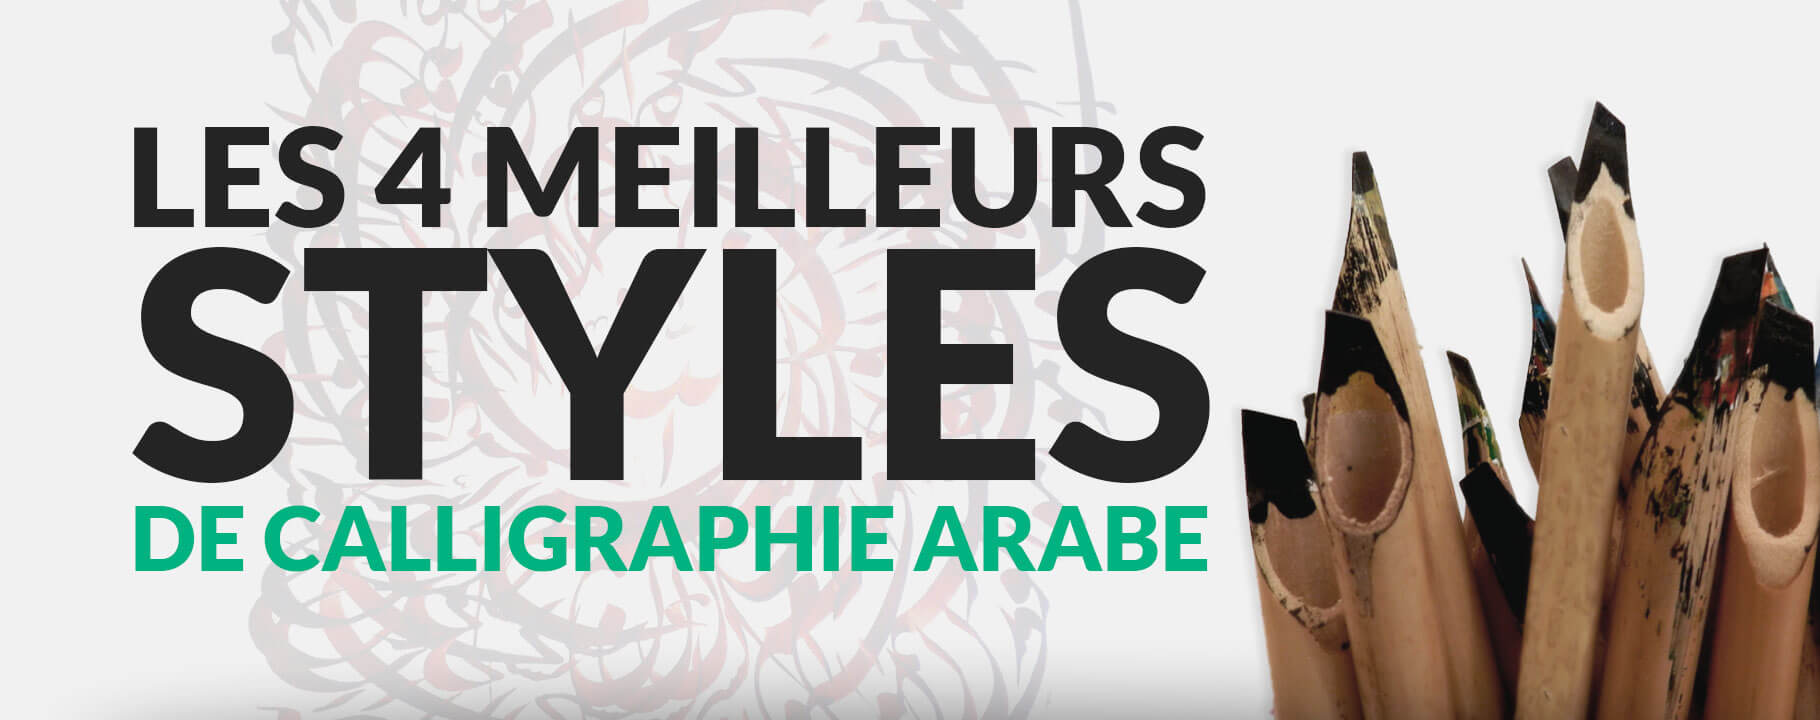 Les 4 meilleurs styles de calligraphie arabe